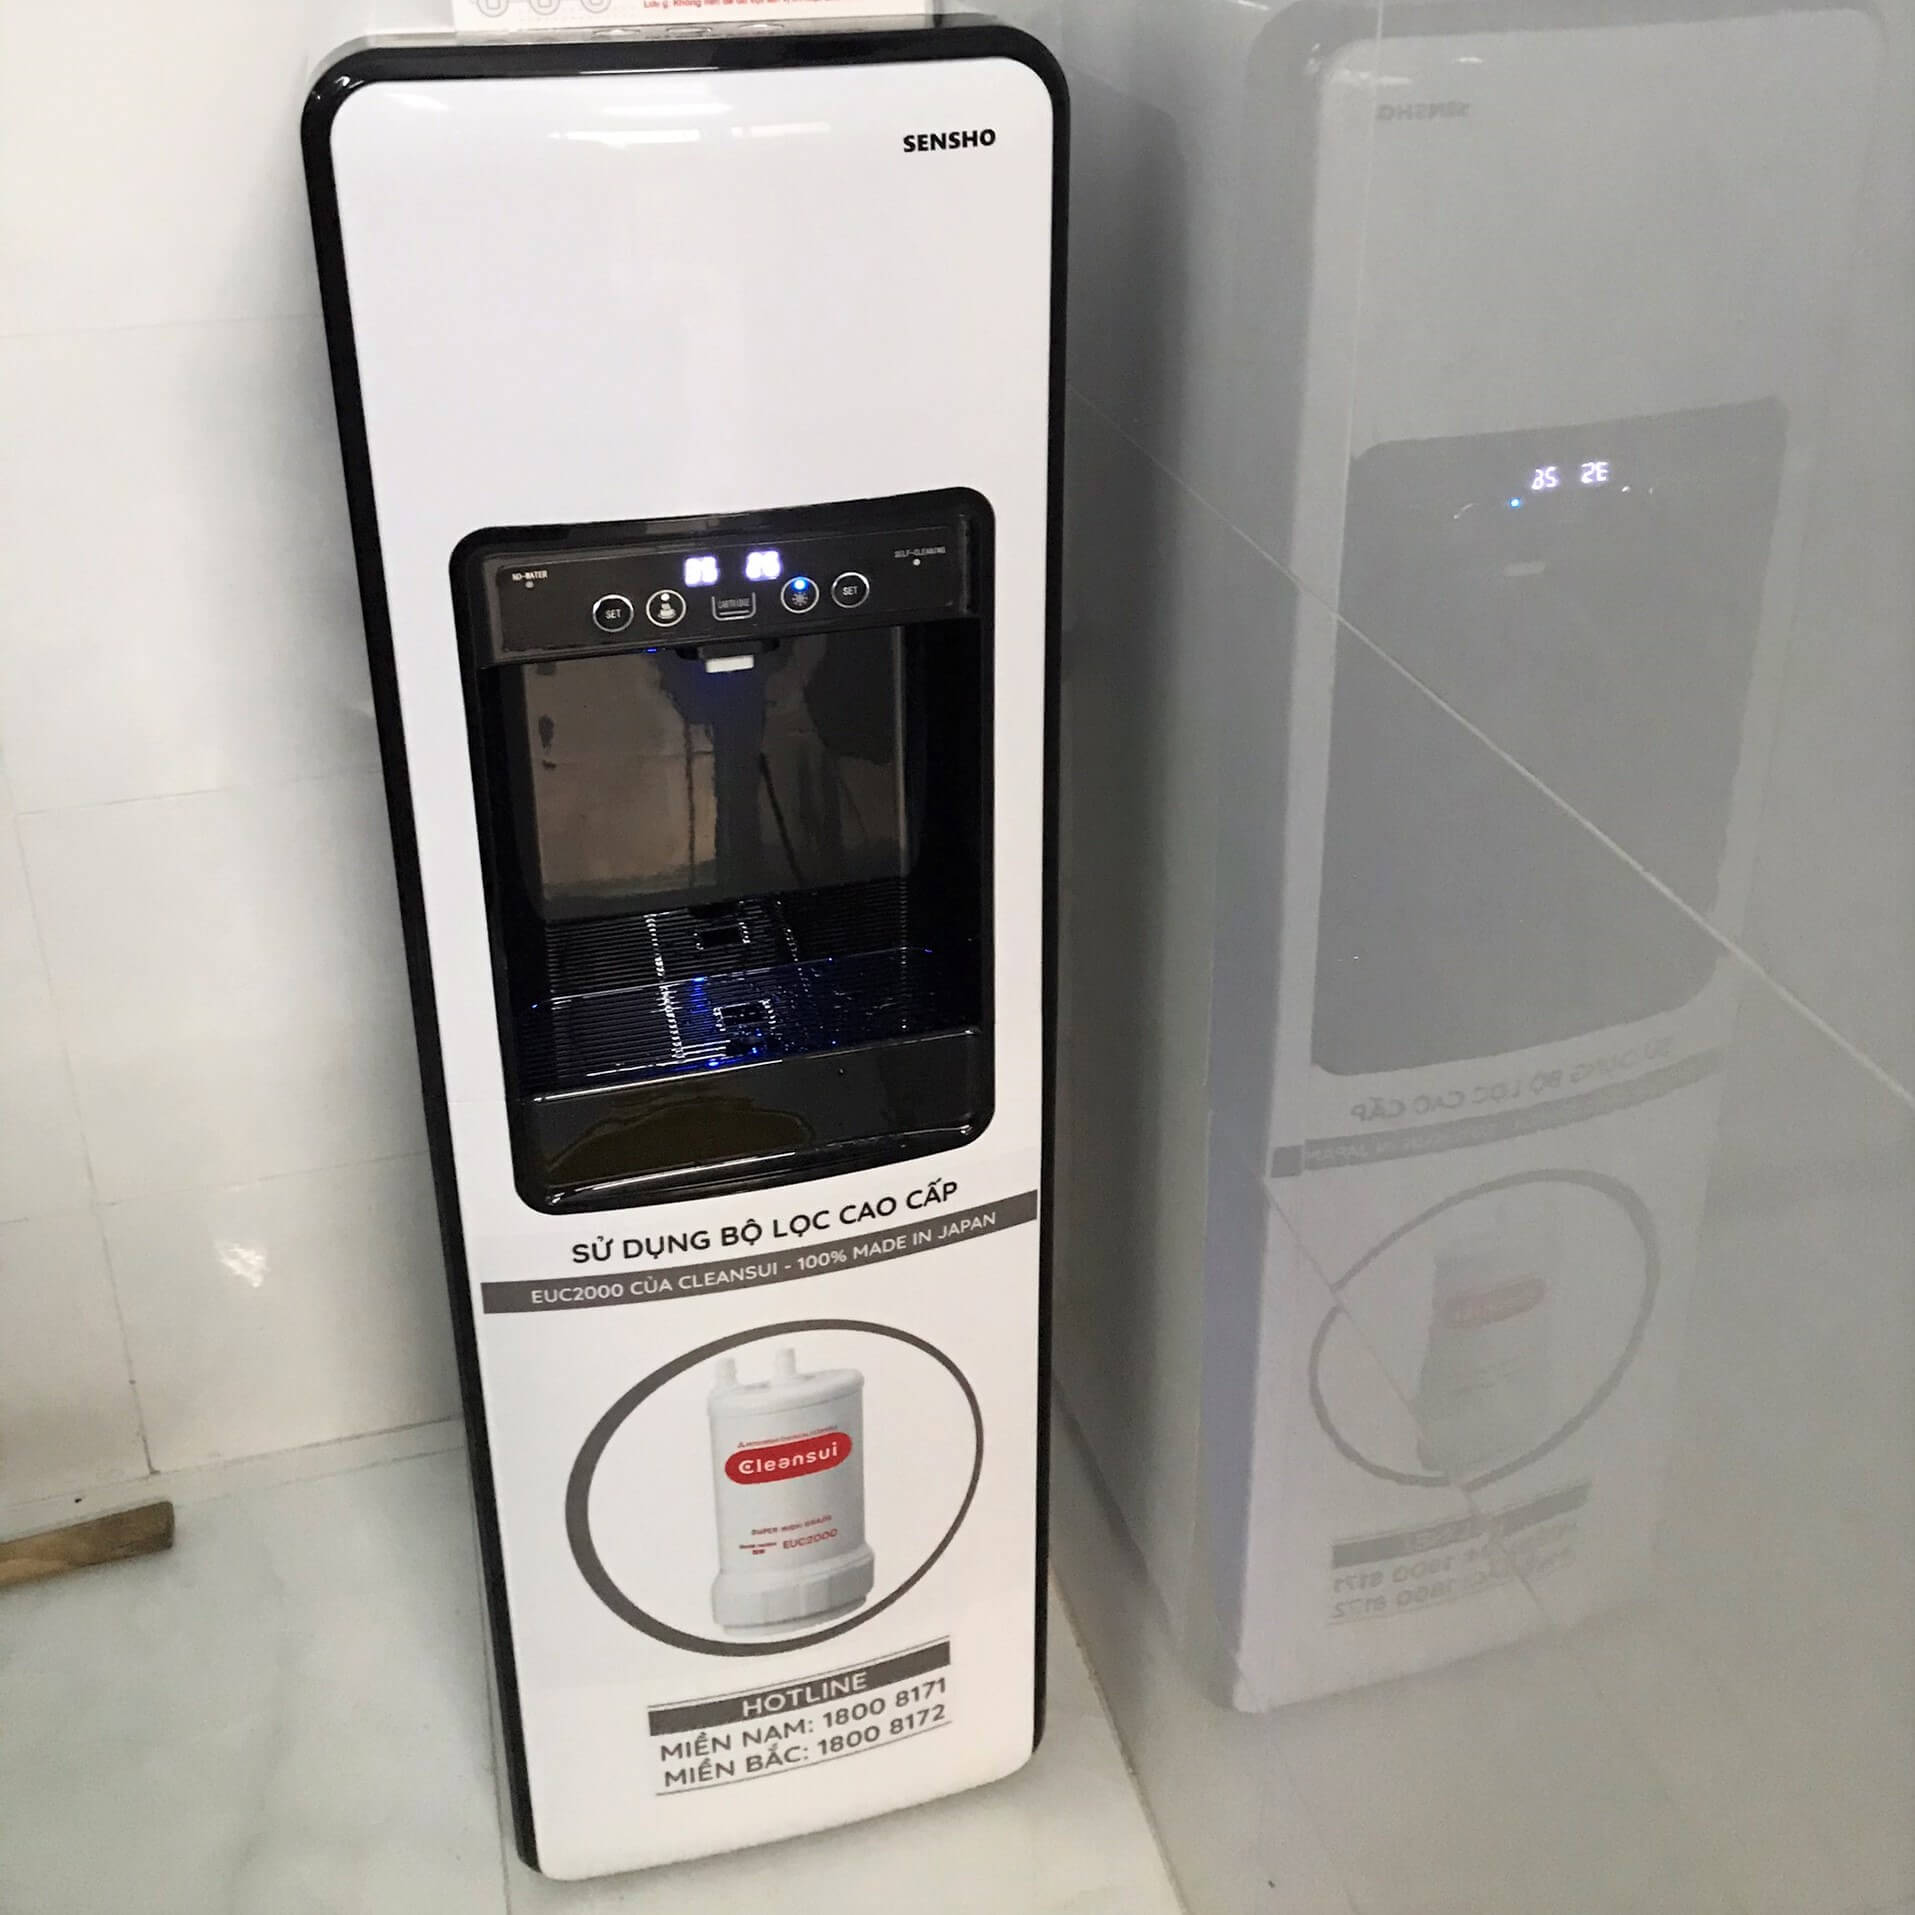 hình ảnh thực tế máy lọc nước nóng lạnh cleansui sensho